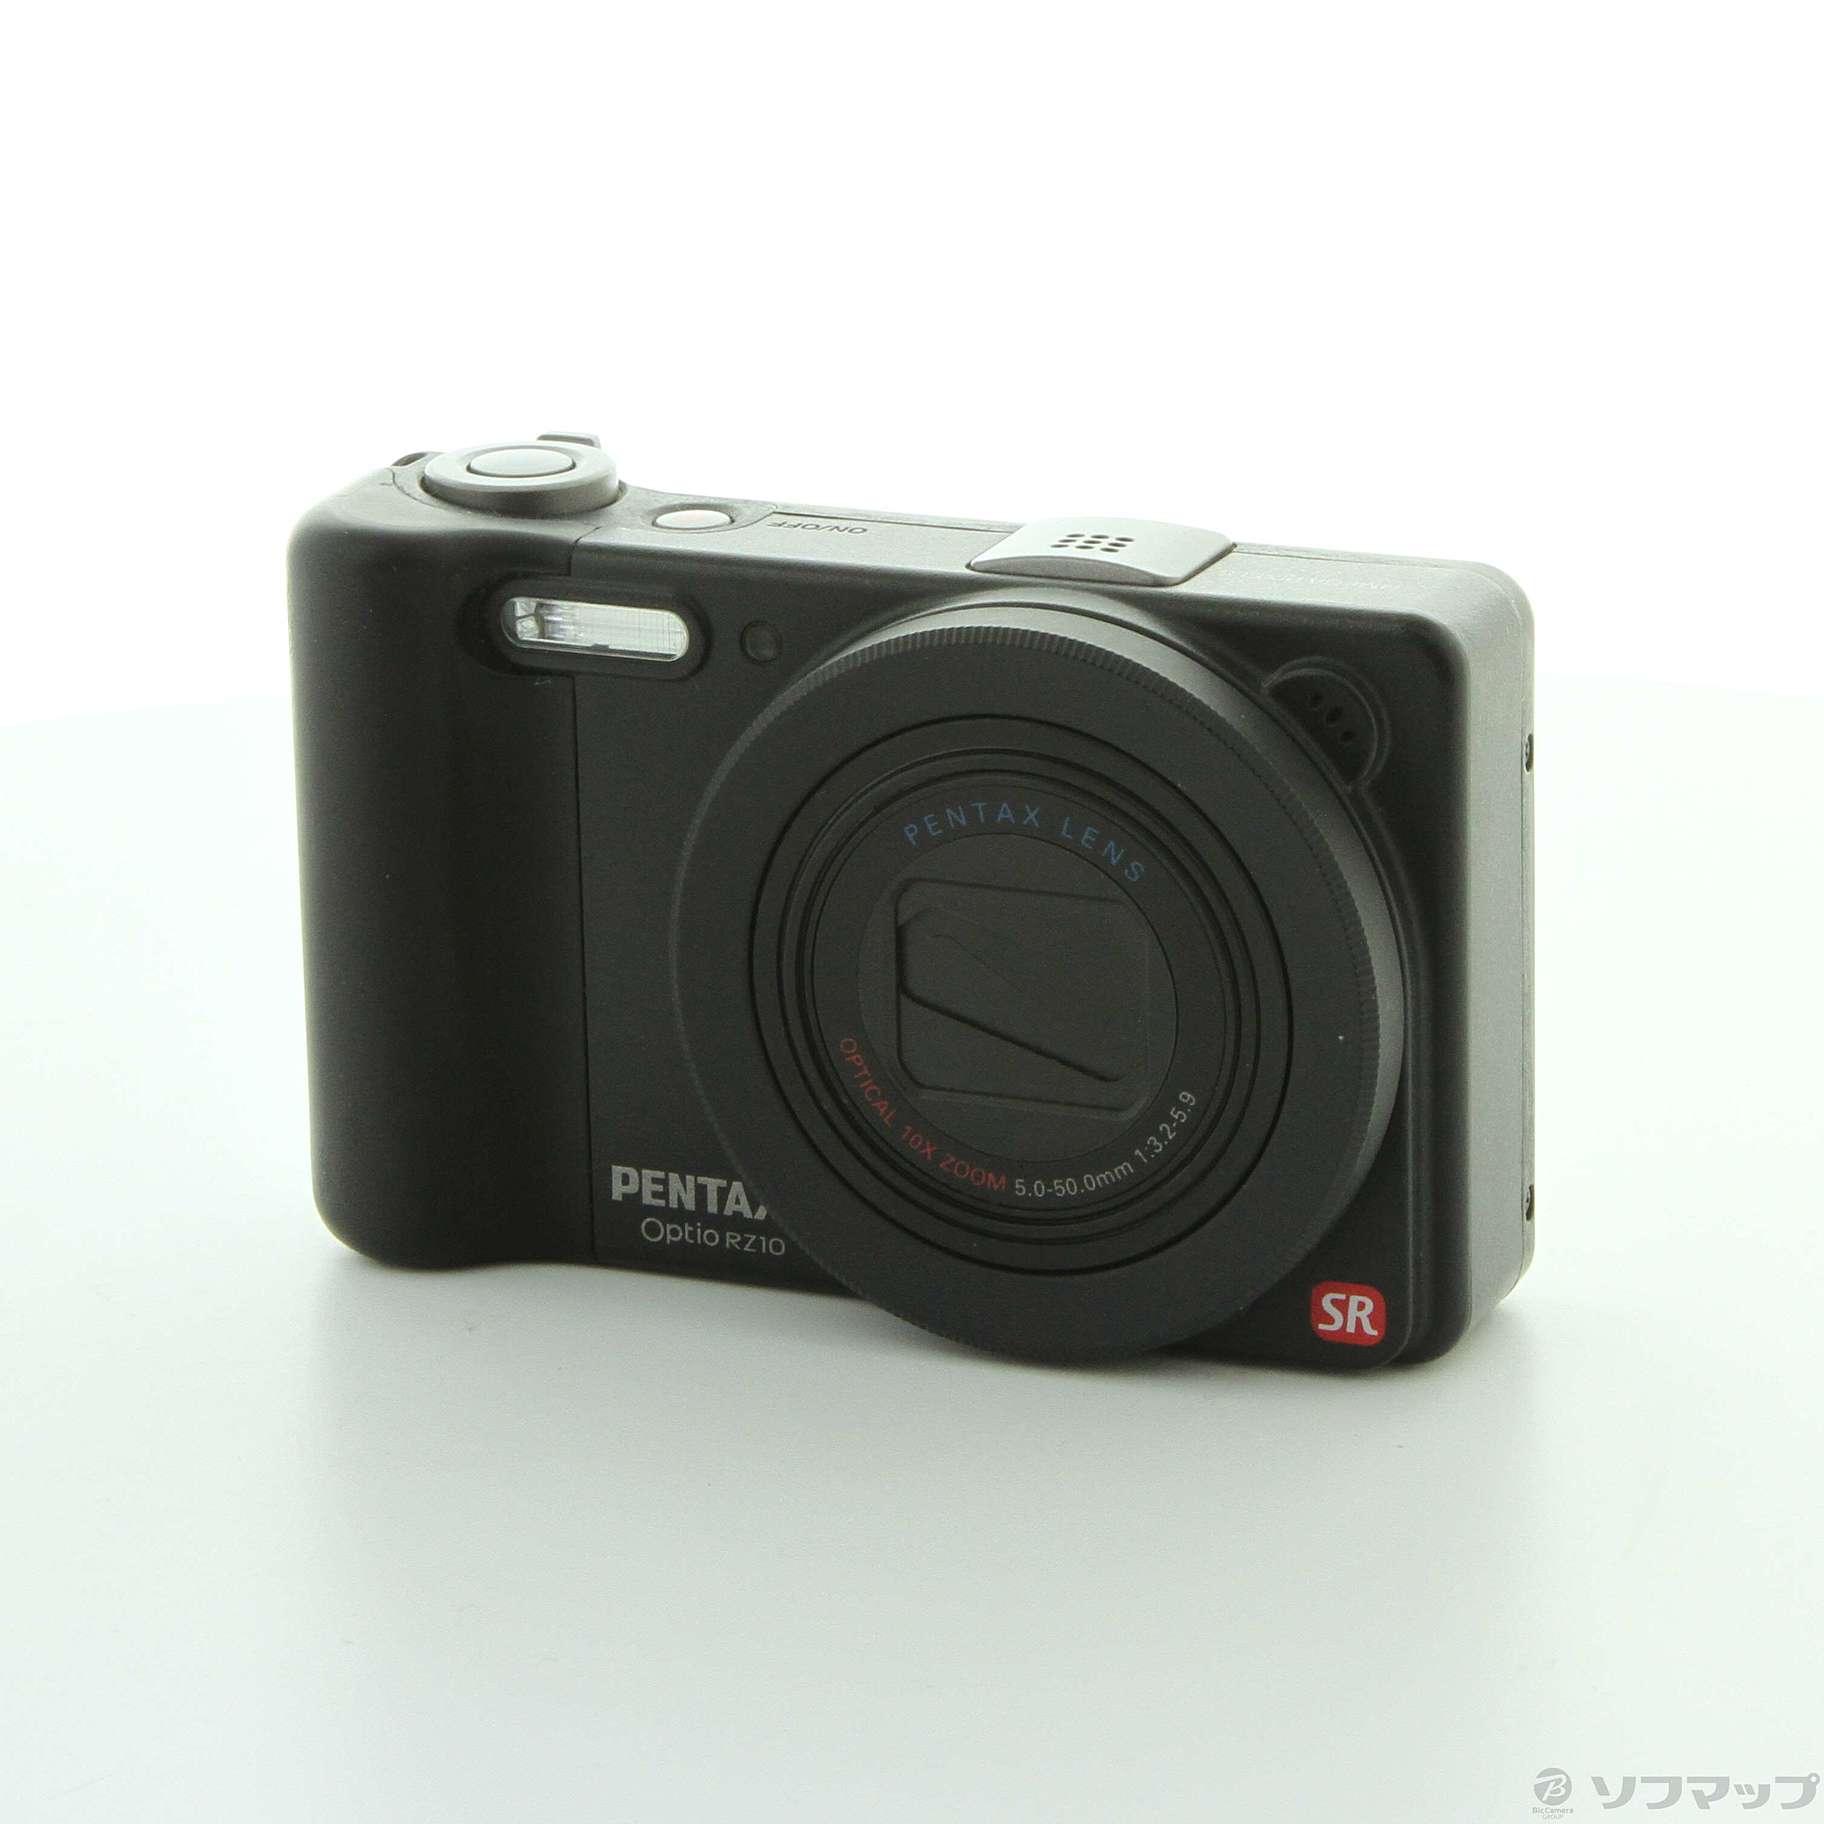 感謝価格 PENTAX Optio RZ10 ペンタックス デジタルカメラ 1400万画素